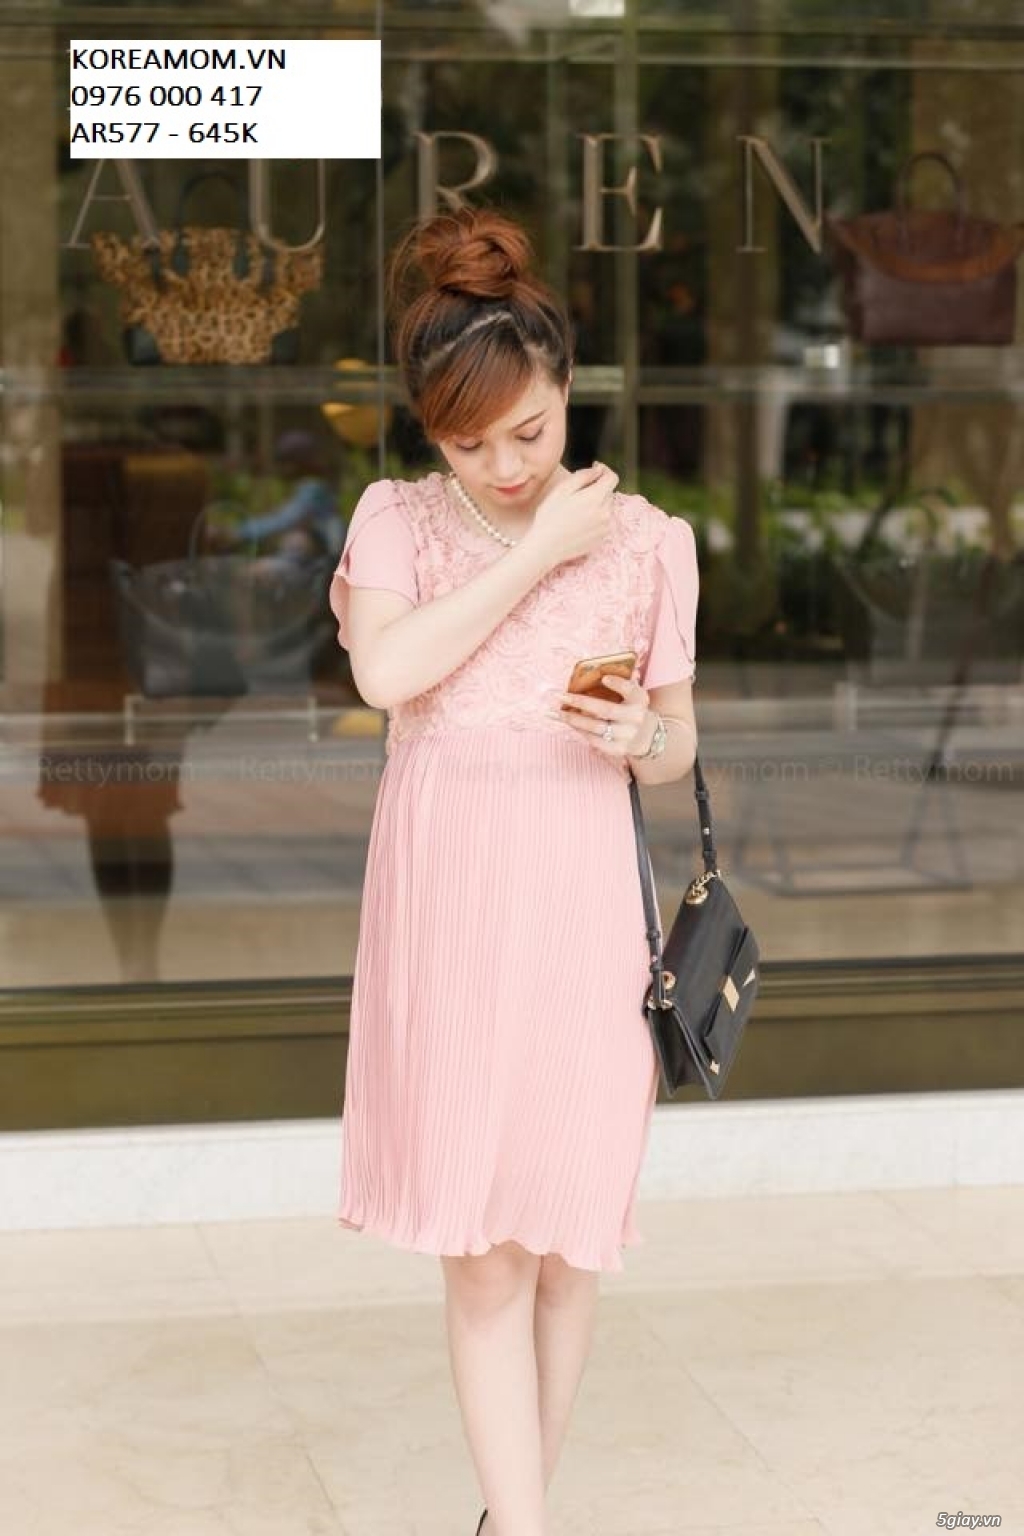 Đầm Bầu KOREA MOM chuyên sỉ và lẻ thời trang bầu Hàn Quốc với giá tốt nhất, thời trang sành điệu - 25